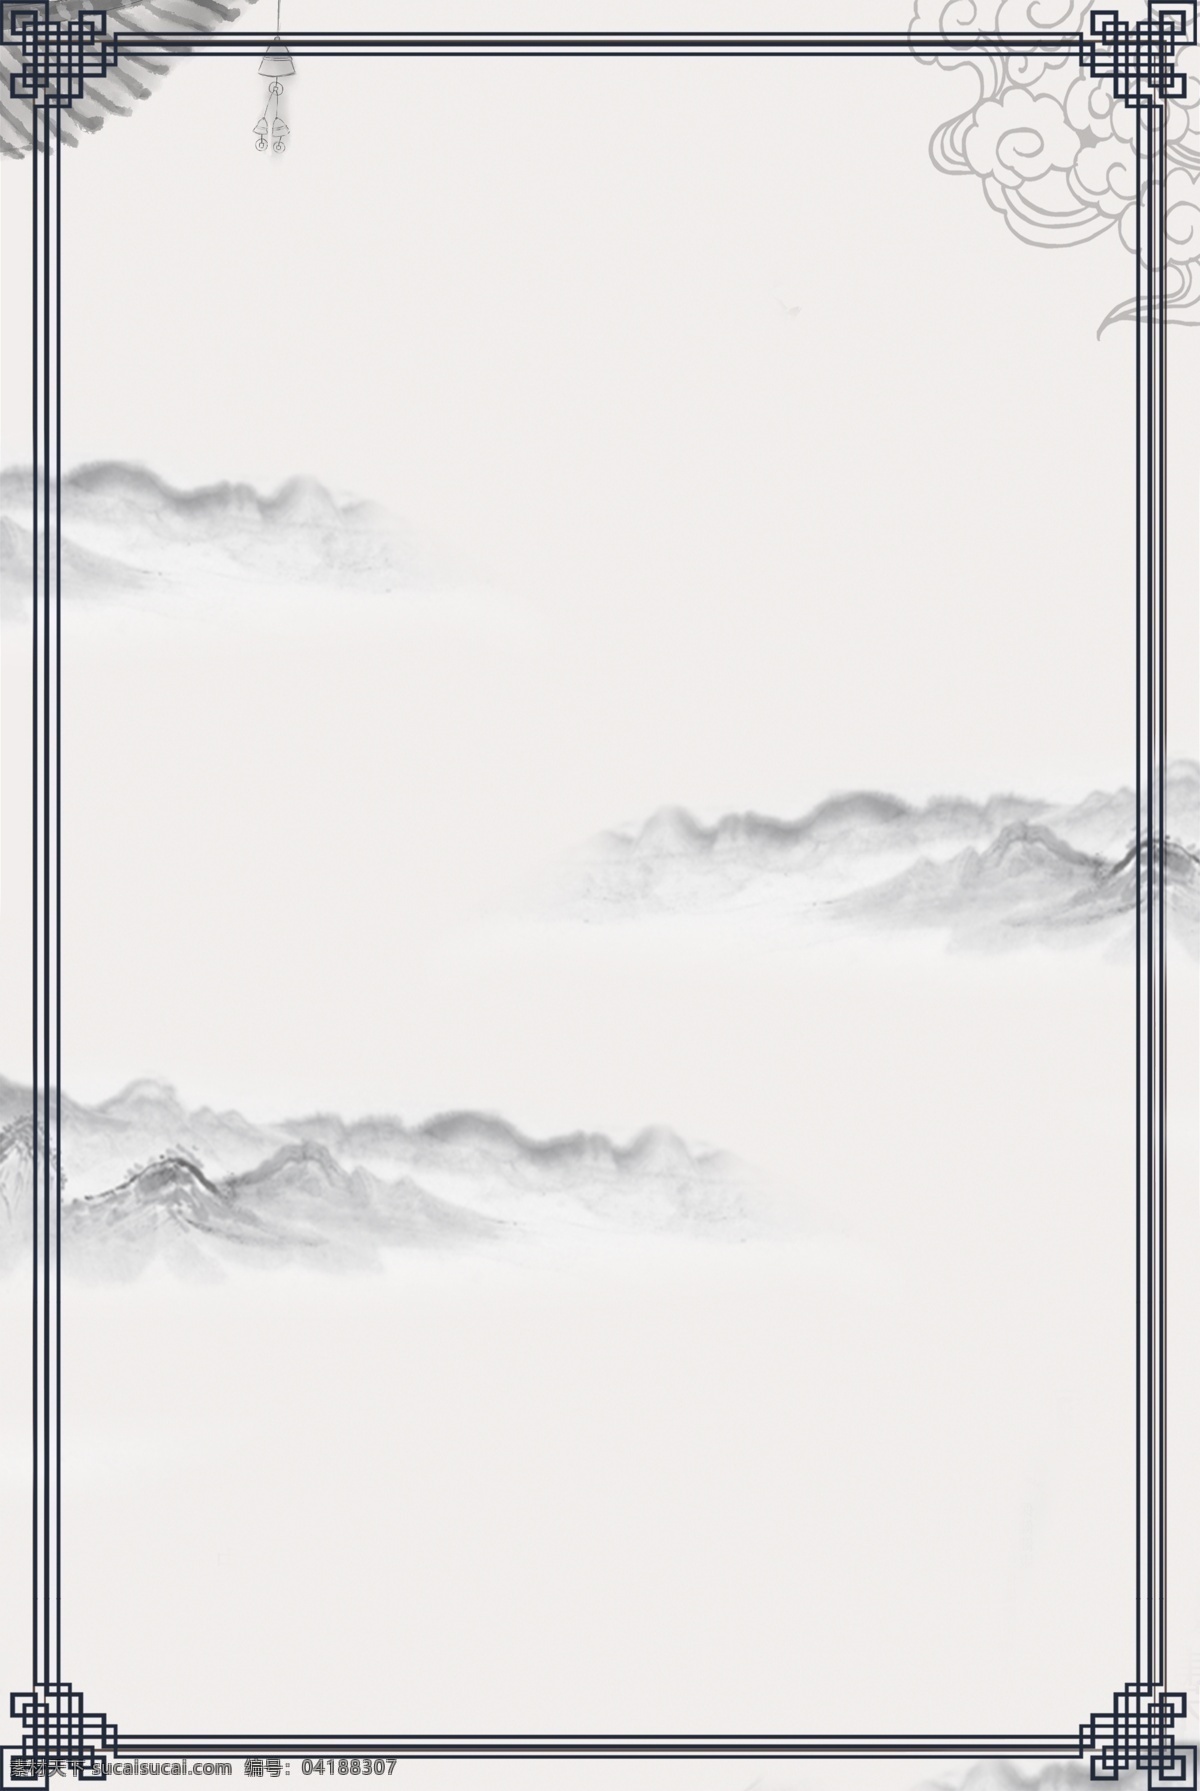 简约 中国 风 水墨 山水画 海报 边框 背景 中国风 水墨画 山水 远山 纹理 云纹花纹 金色 质感 开心 温暖 愉悦 幸福